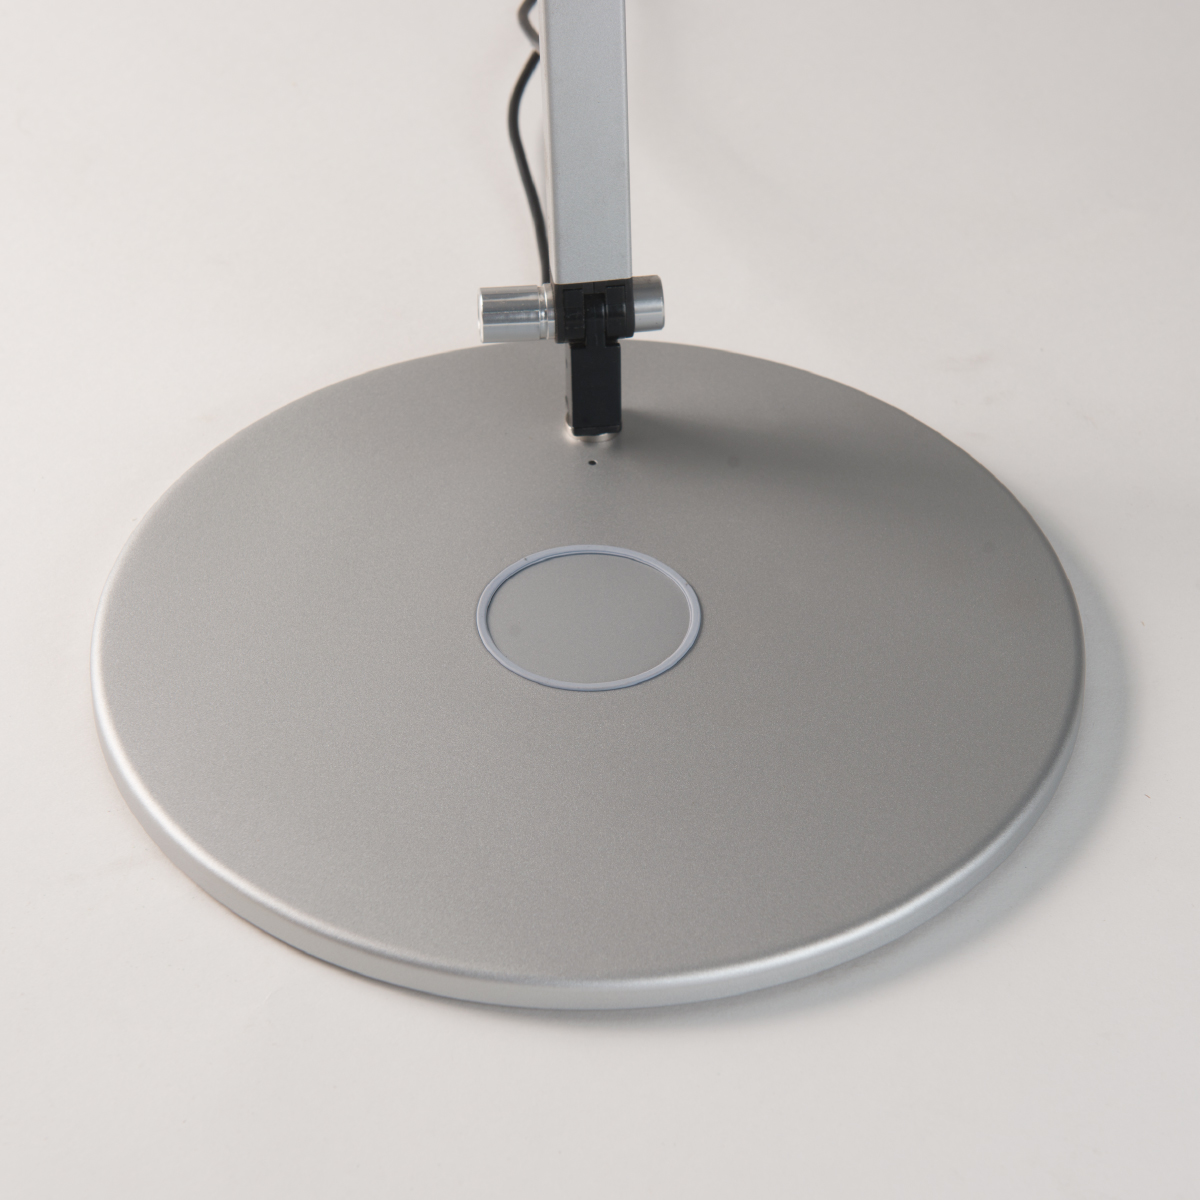 Splitty-Pro-Desk-Lamp-wireless-charging-base-silver